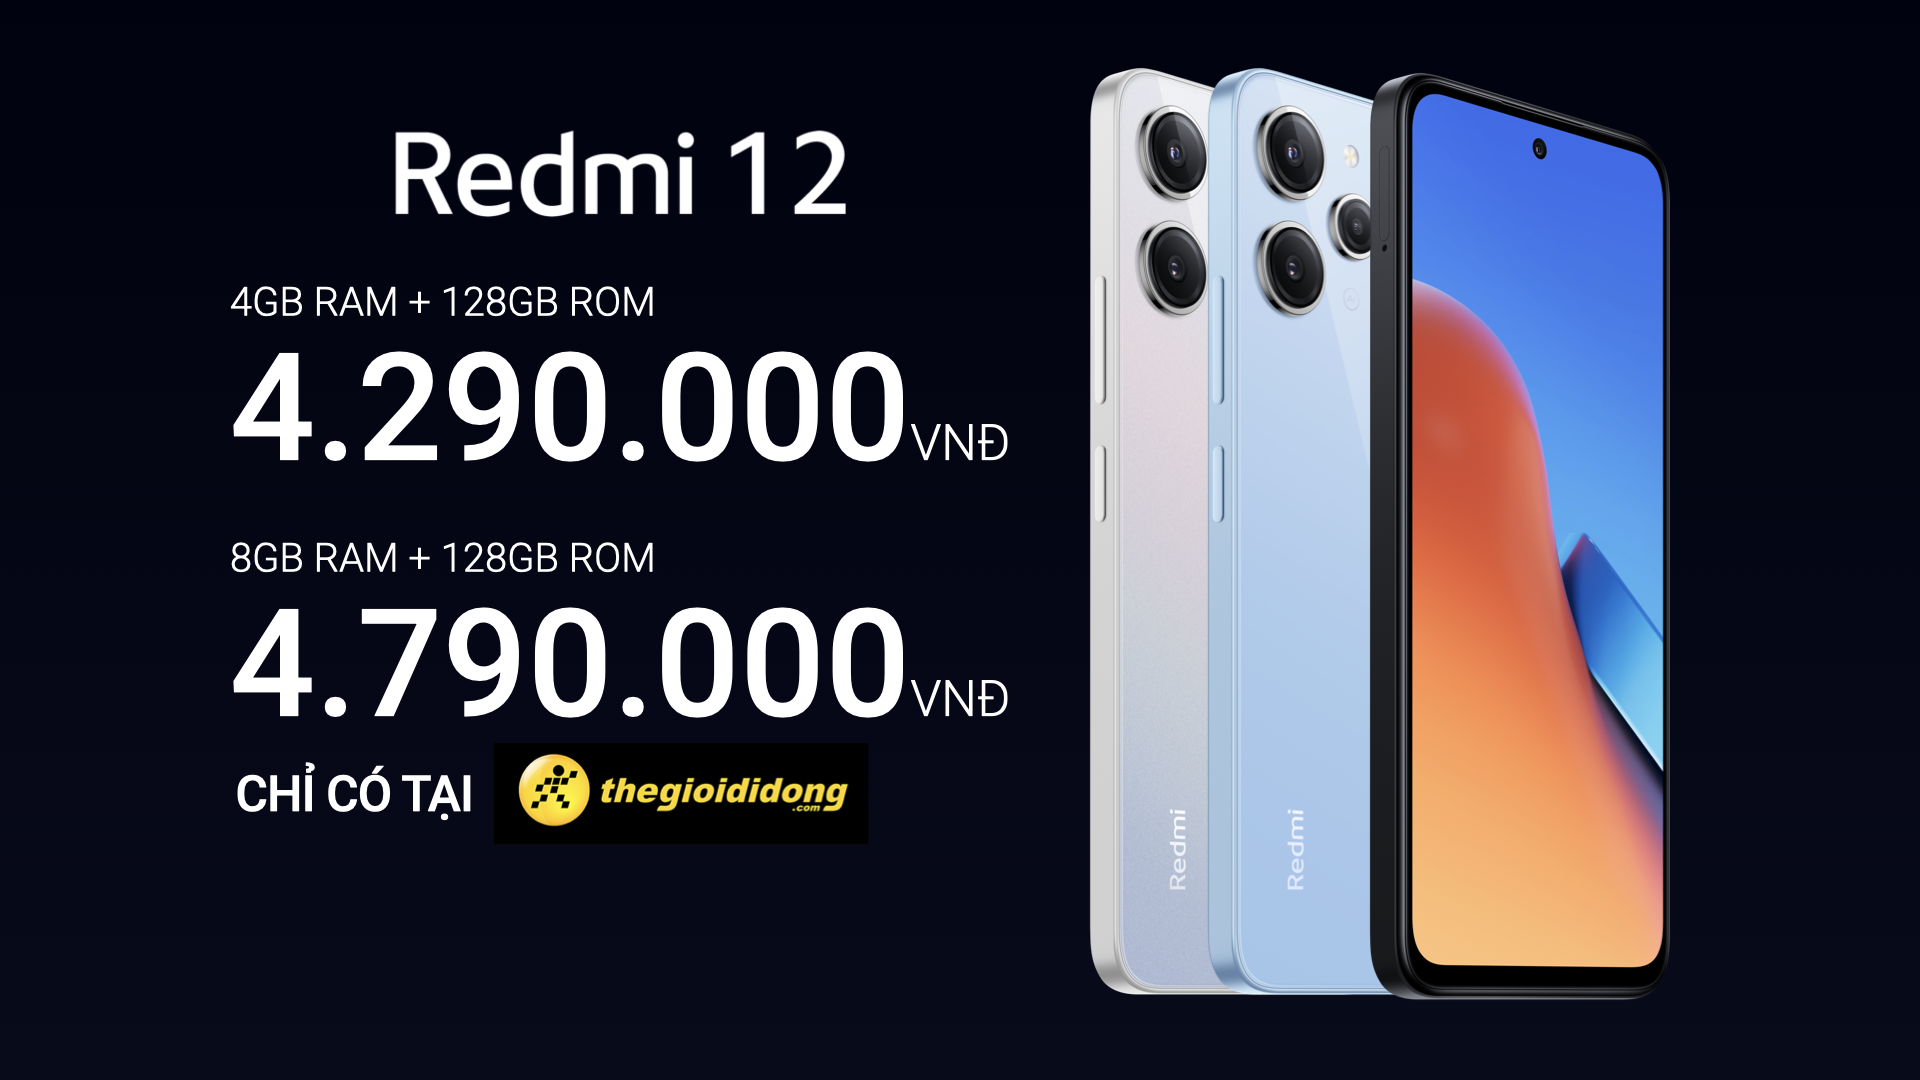 Ra mắt Redmi 12: Giá dưới 4 triệu nhưng có một tính năng vượt trội không đối thủ nào có - Ảnh 4.